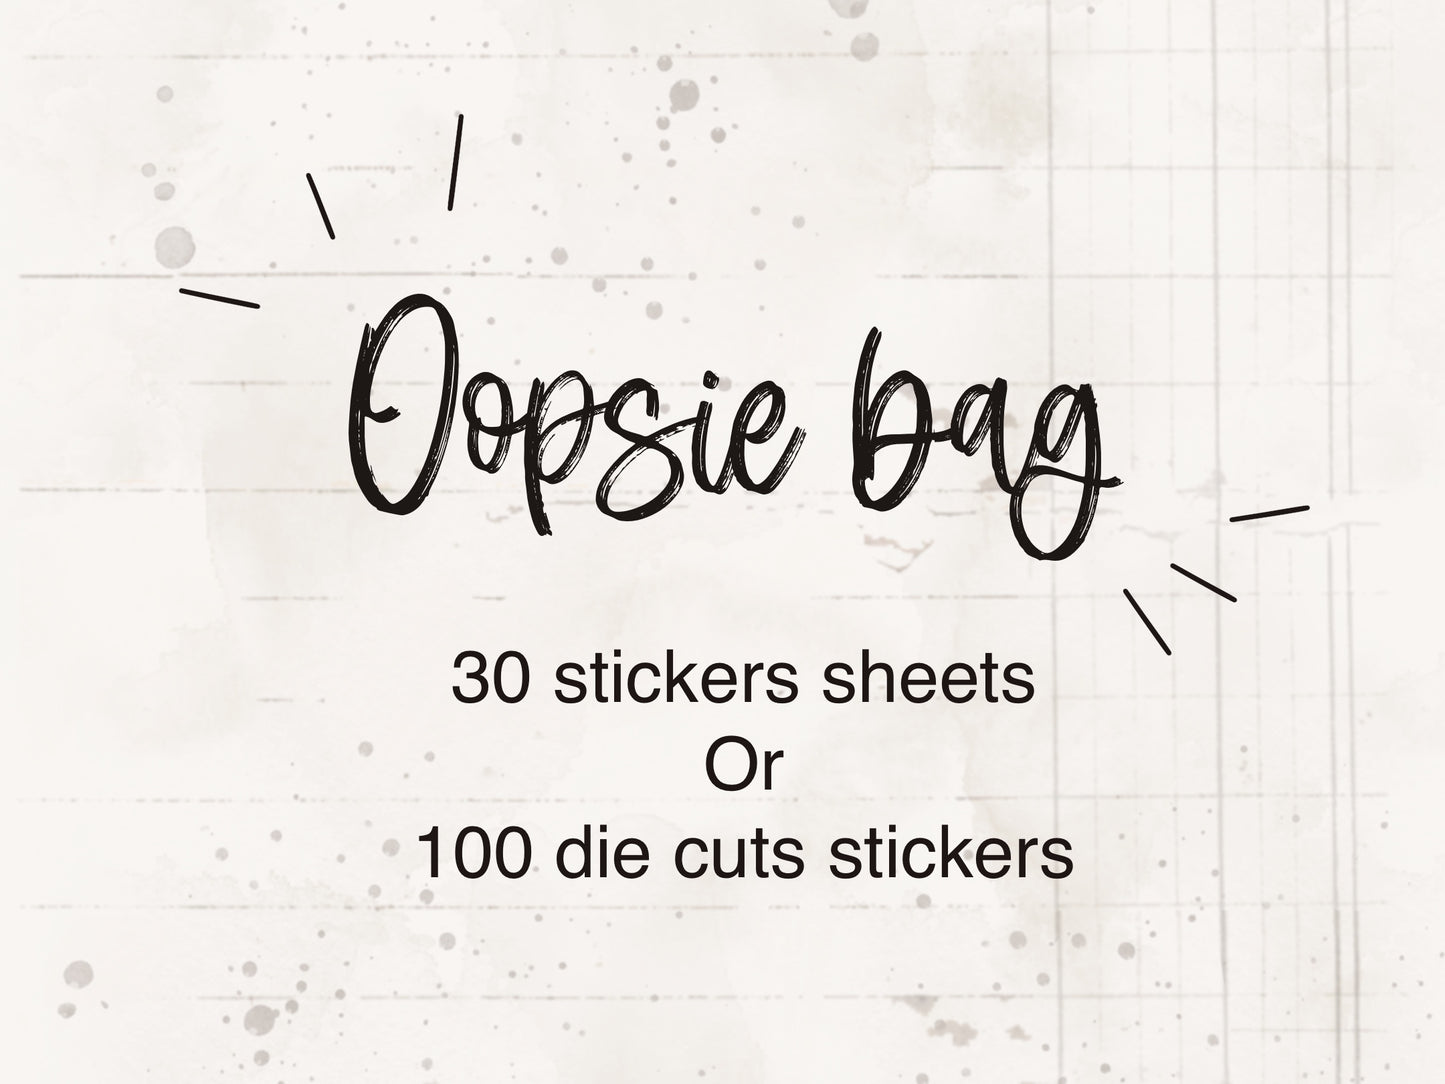 Oopsie stickers bag !